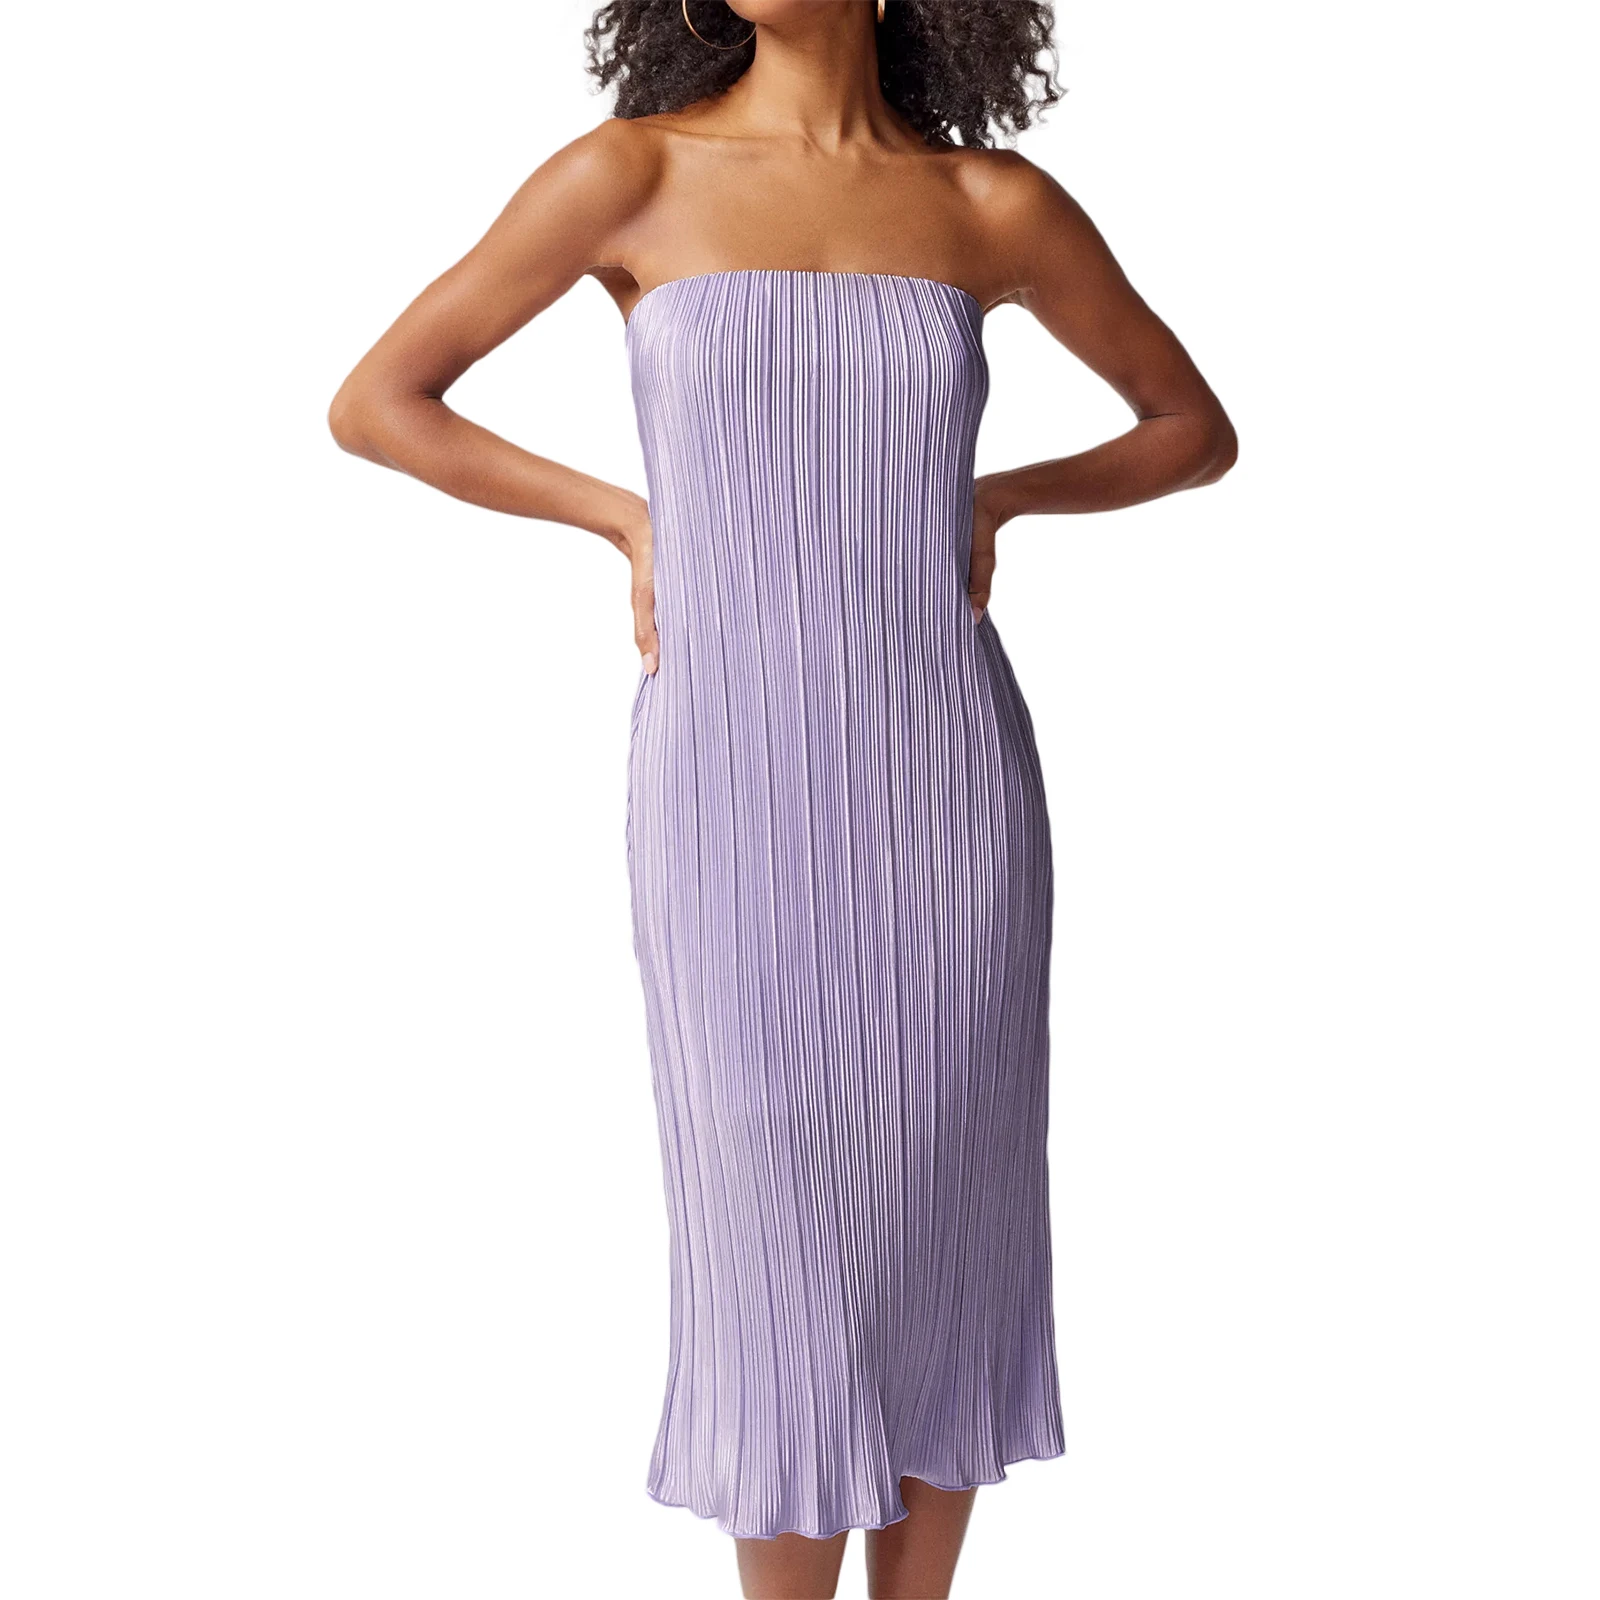 Femei Top Dress Strapless Fără Mâneci Culoare Solidă Cutat Rochie De Vară Pe Plajă - 4